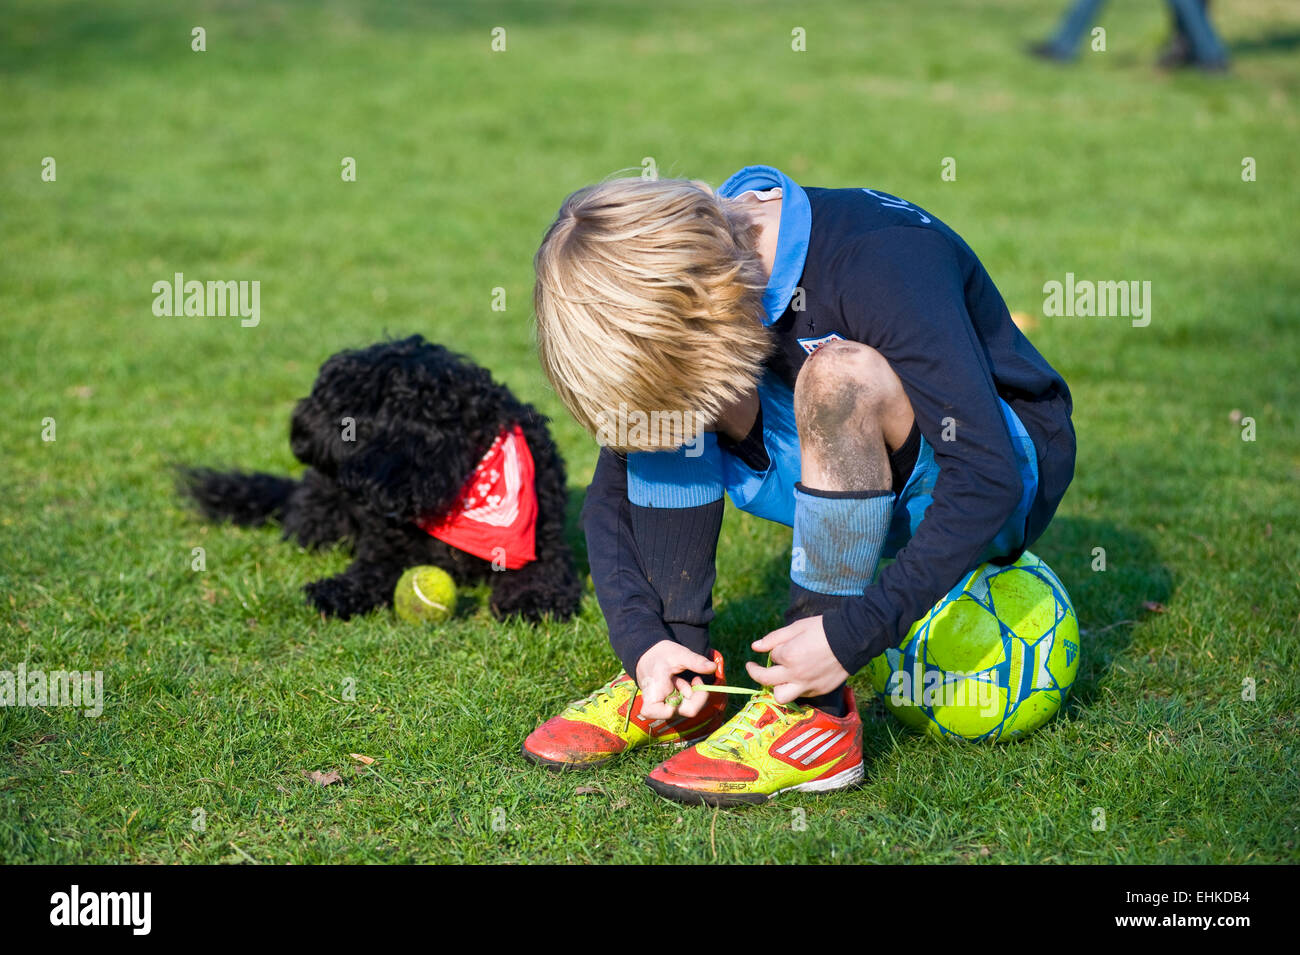 Ein Junge sitzt auf seinem Fußball und sich seine Schnürsenkel auf seine g  = Fußballschuhe während seinem Hund sitzt neben ihm ein Halstuch Sport  Stockfotografie - Alamy